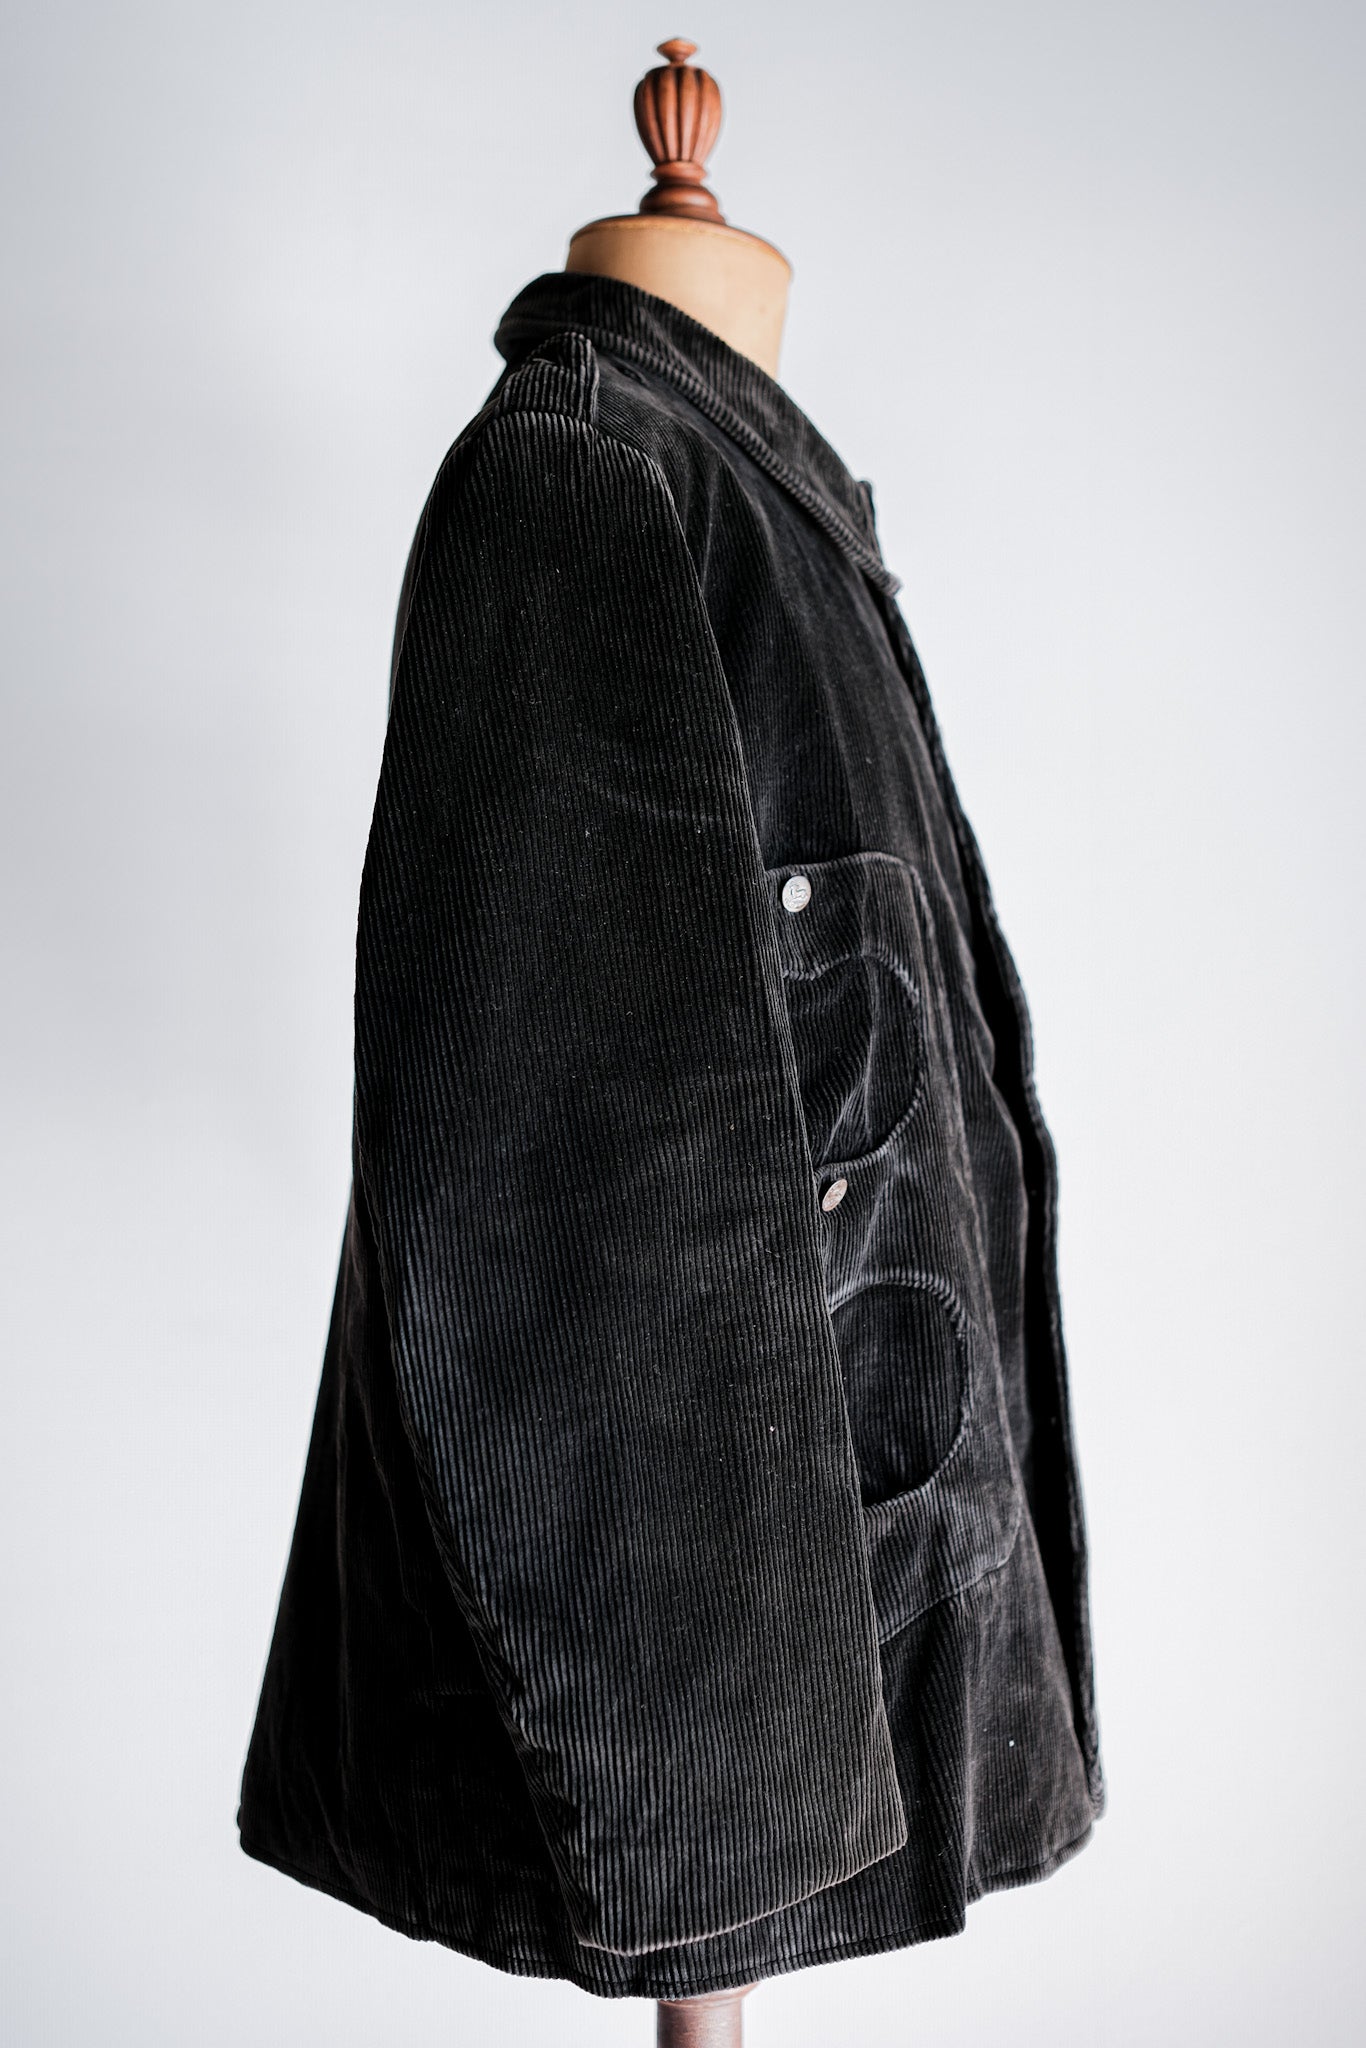 [~ 60 년대] 프랑스 빈티지 블랙 코듀로이 코스 타입 사냥 재킷